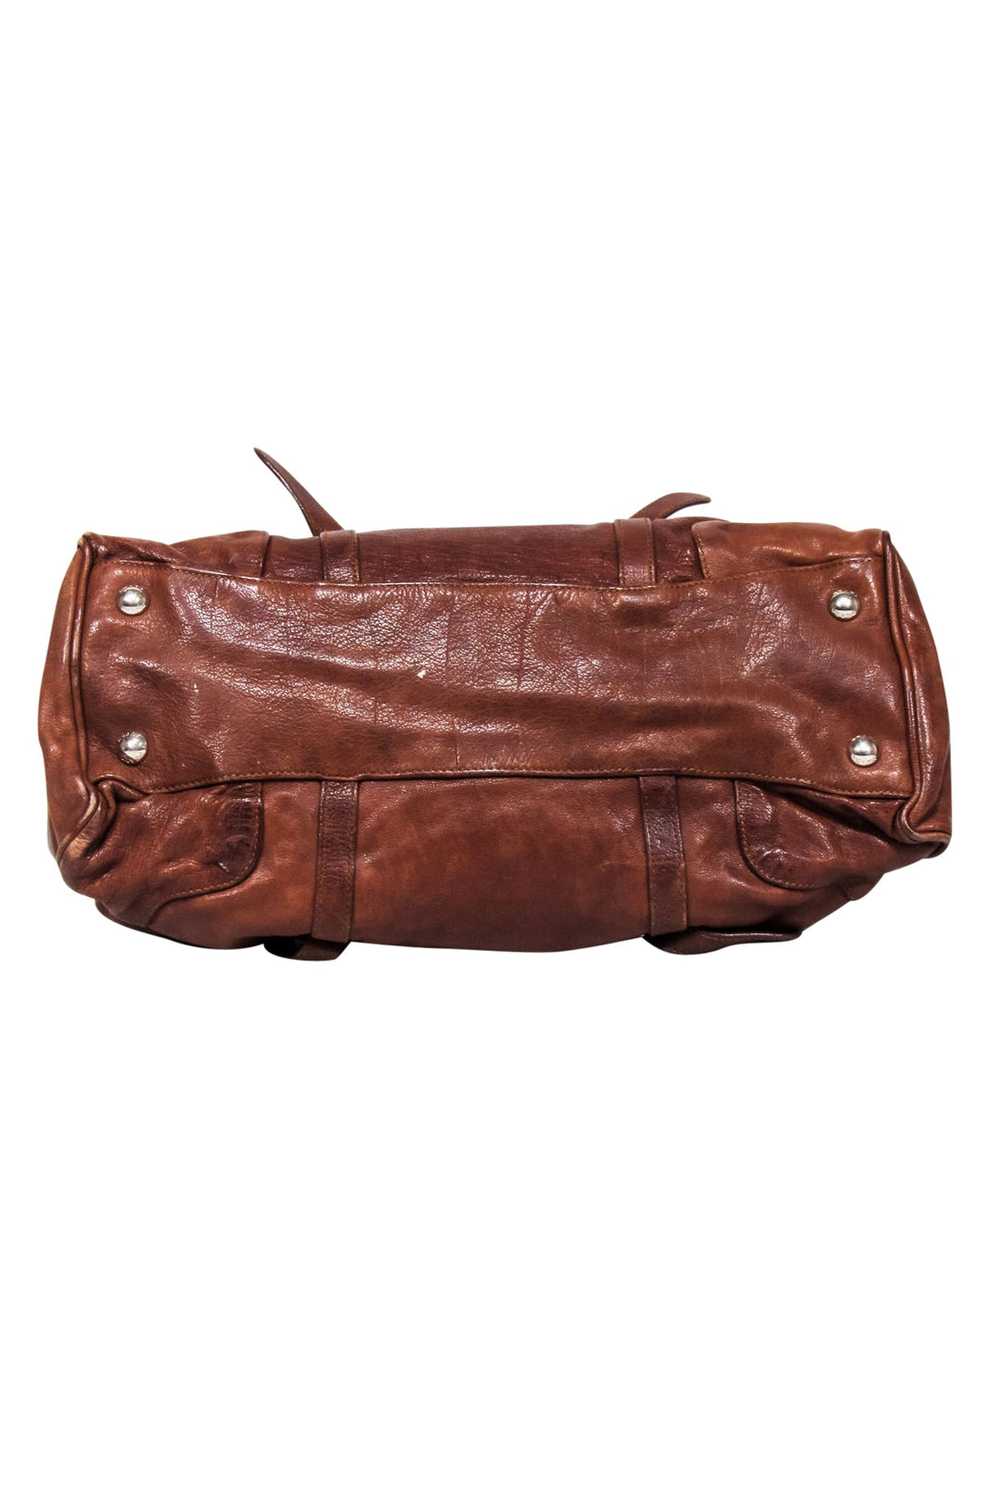 Prada - Brown "Vitello Shine" Handbag - image 4